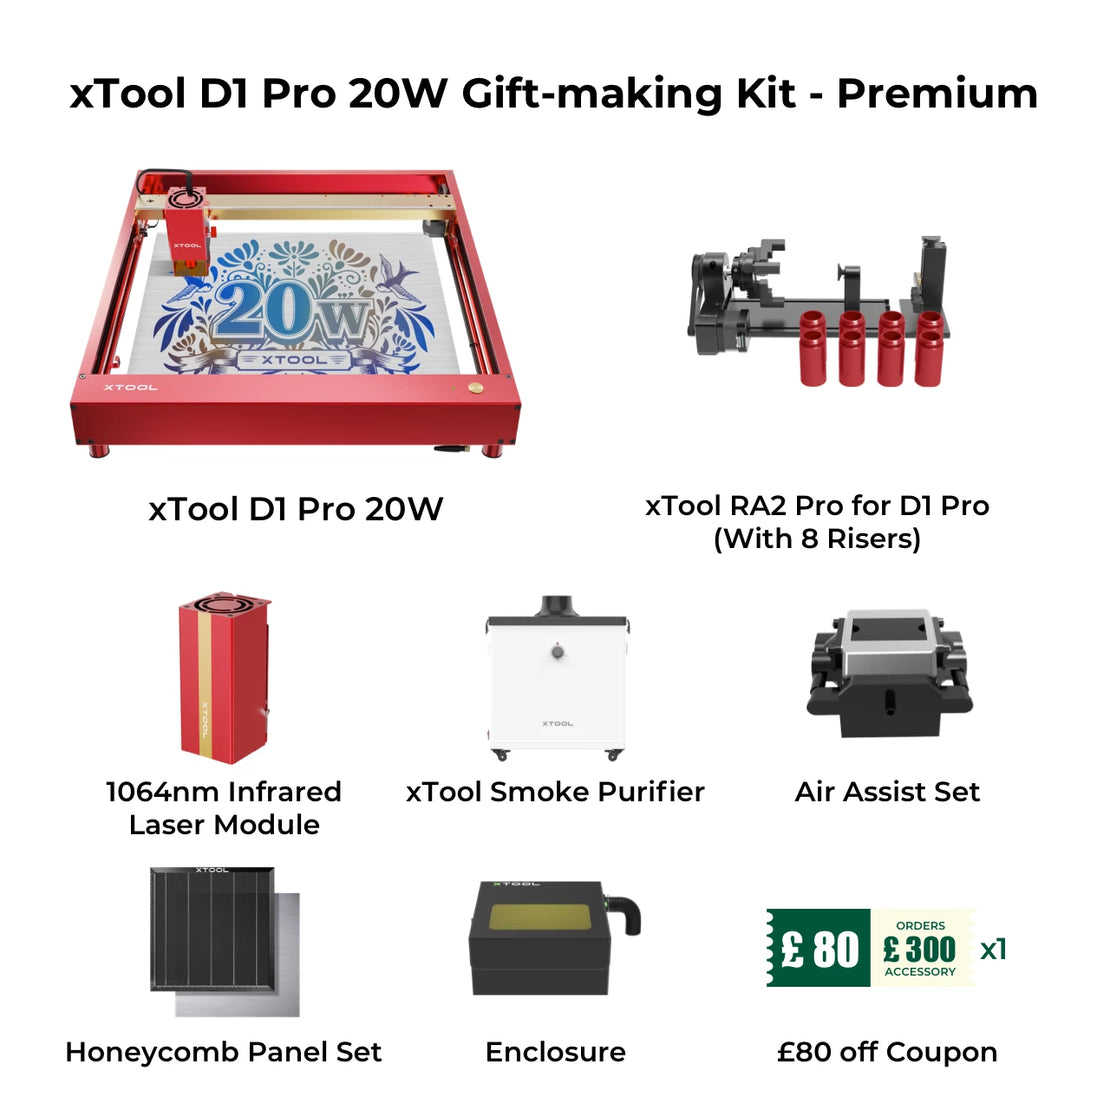 D1 Pro 20W Gift-making Bundle